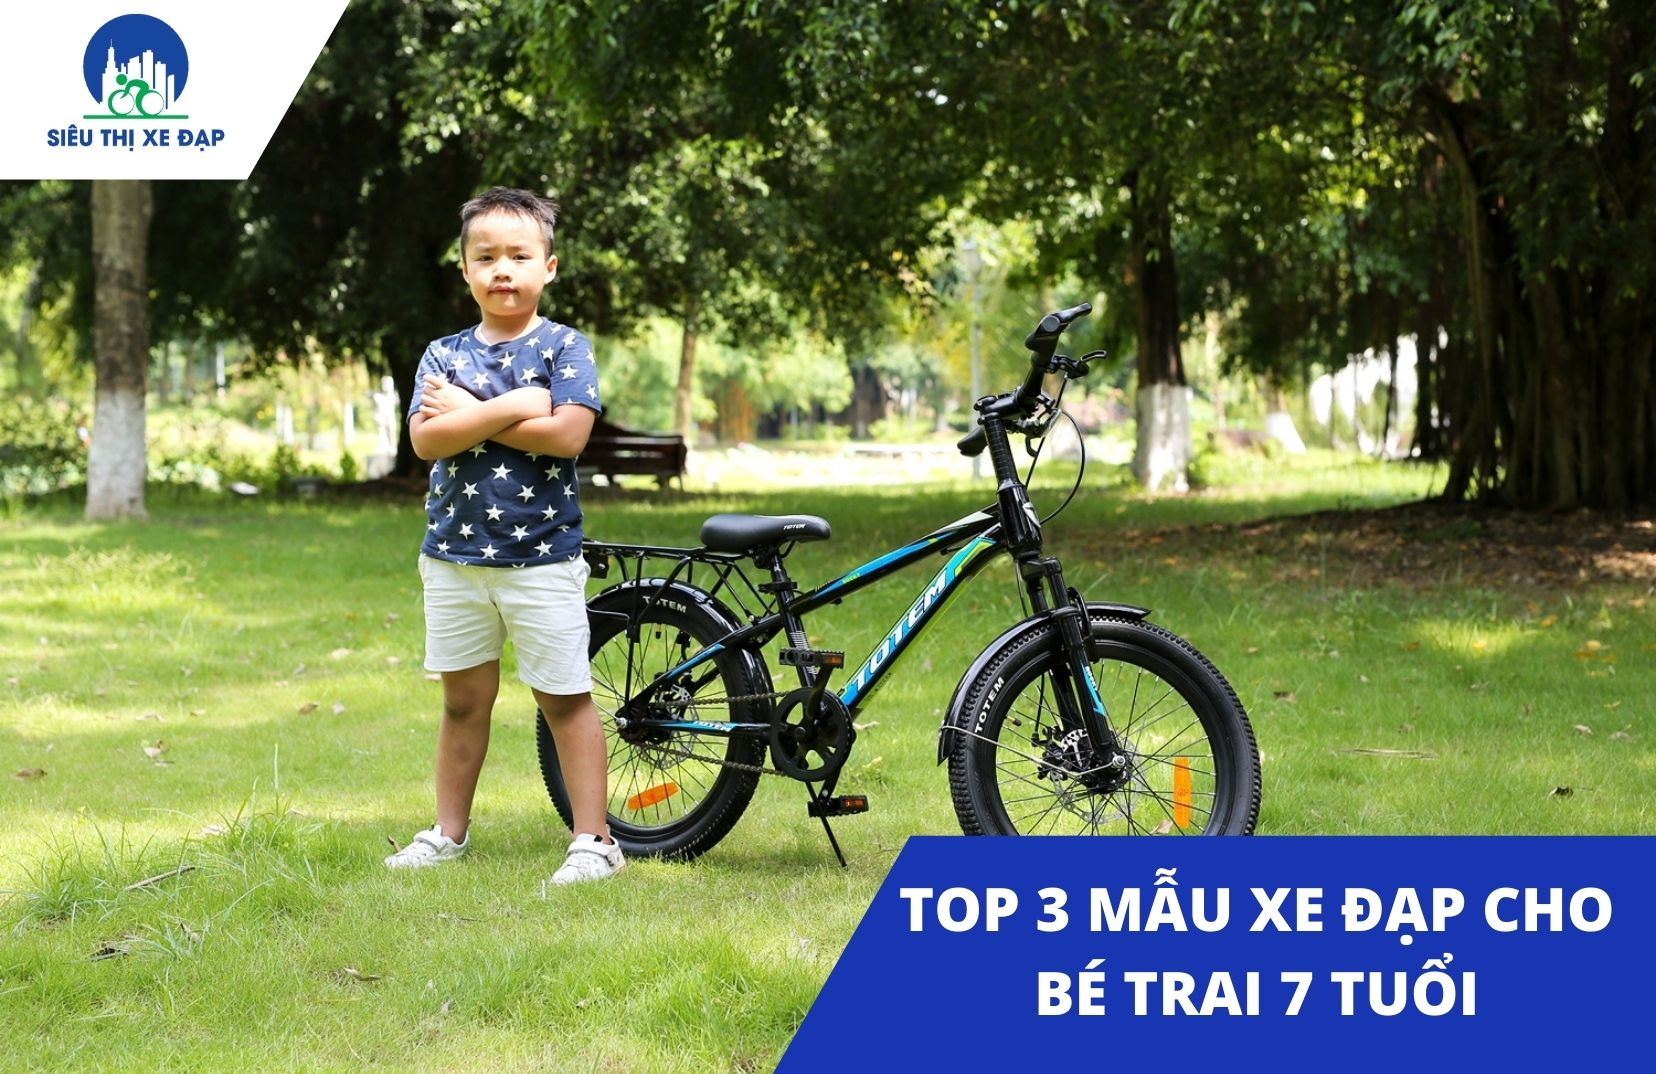 3 mẫu xe đạp cho bé trai 7 tuổi chất lượng nhất 2021